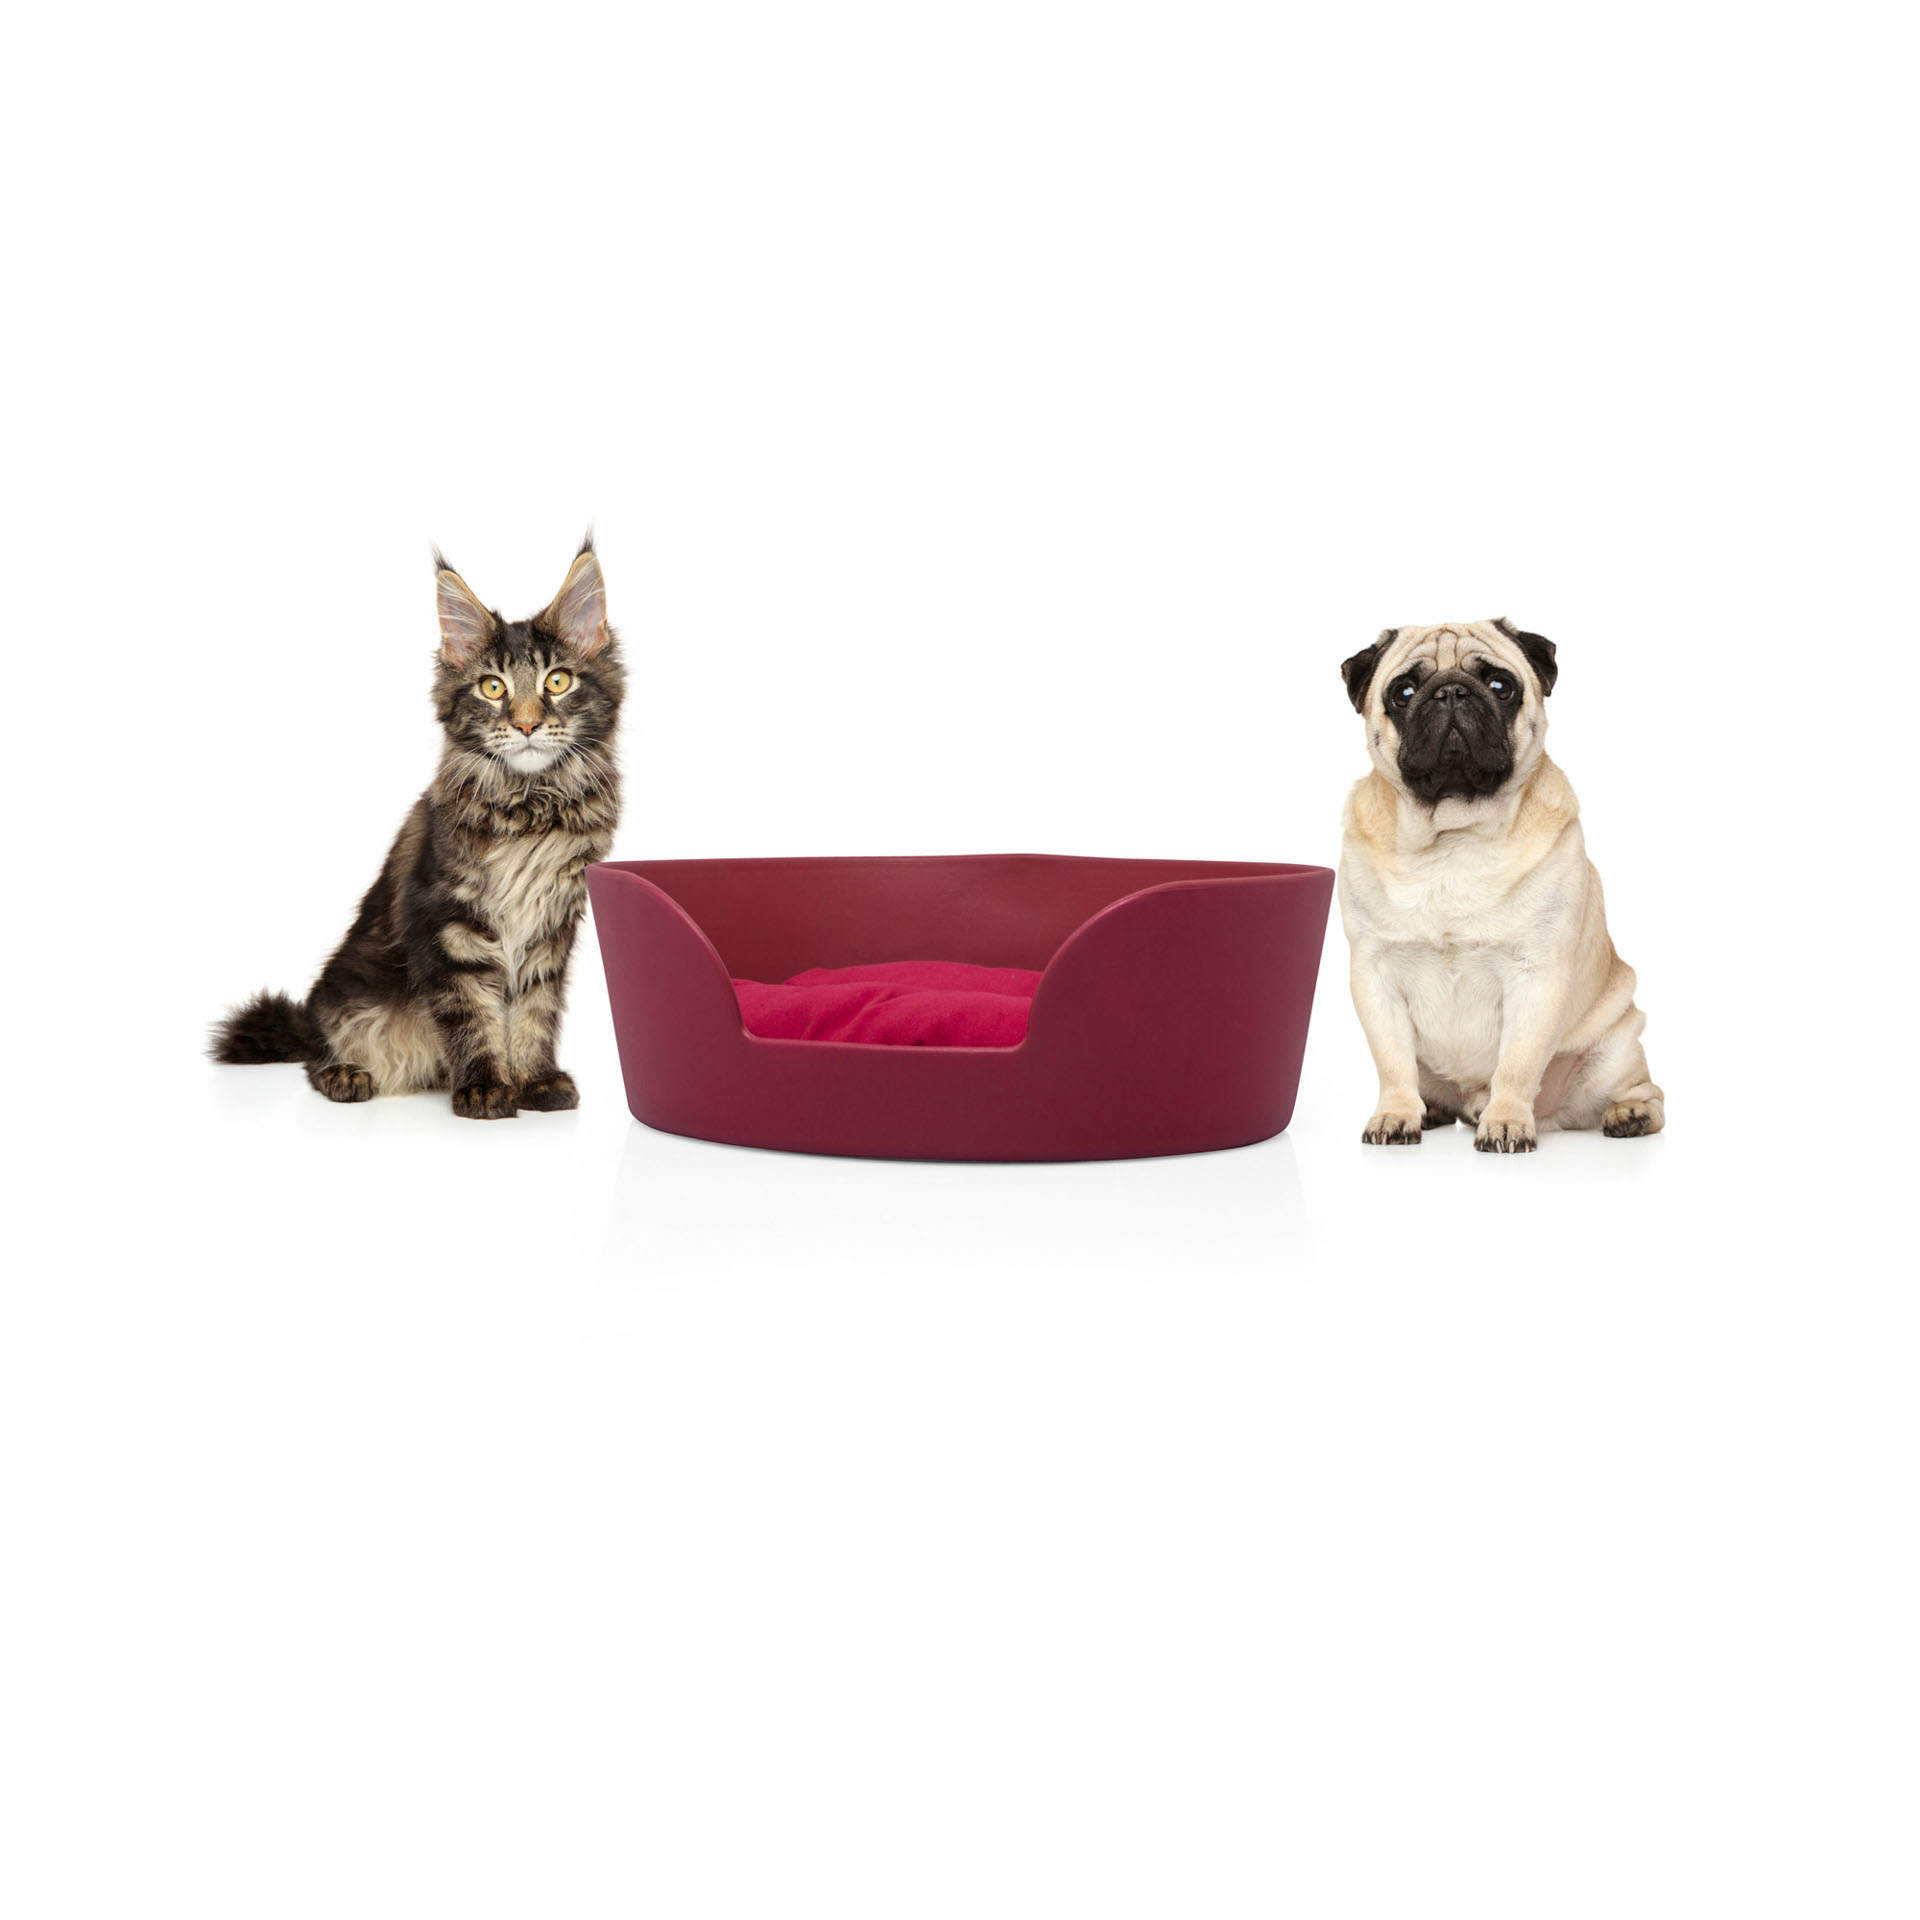 Cuccia per cani e gatti - The Boo Bed - colore rosso, rosso, large